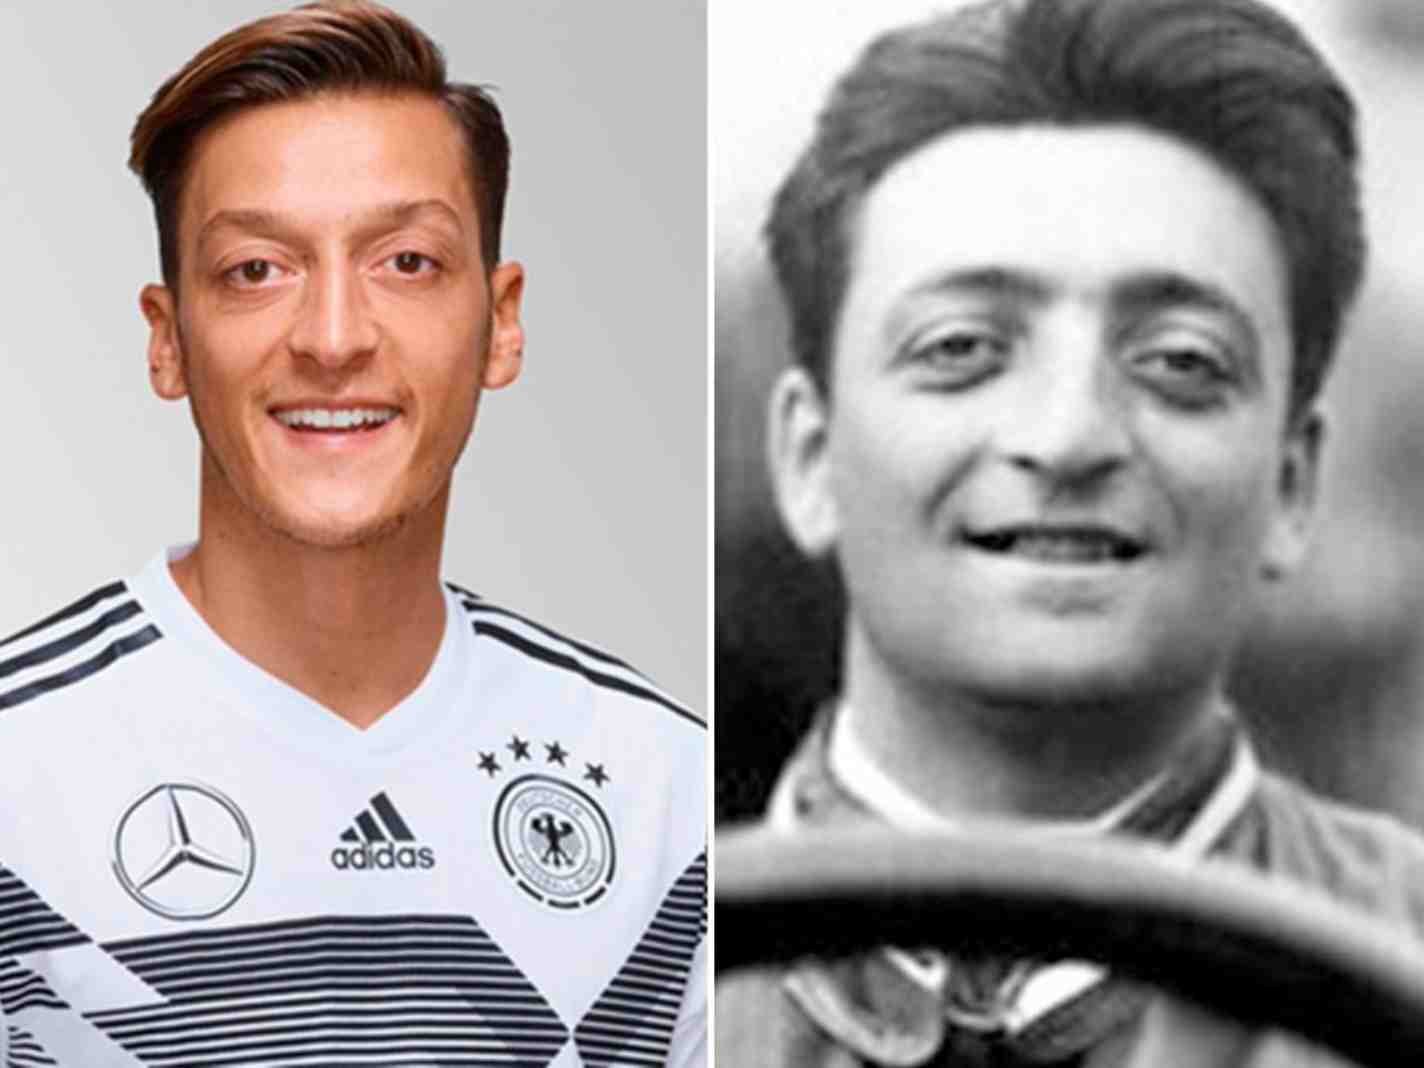 Özil is the reincarnation of Ferrari Enzo : r/Gunners